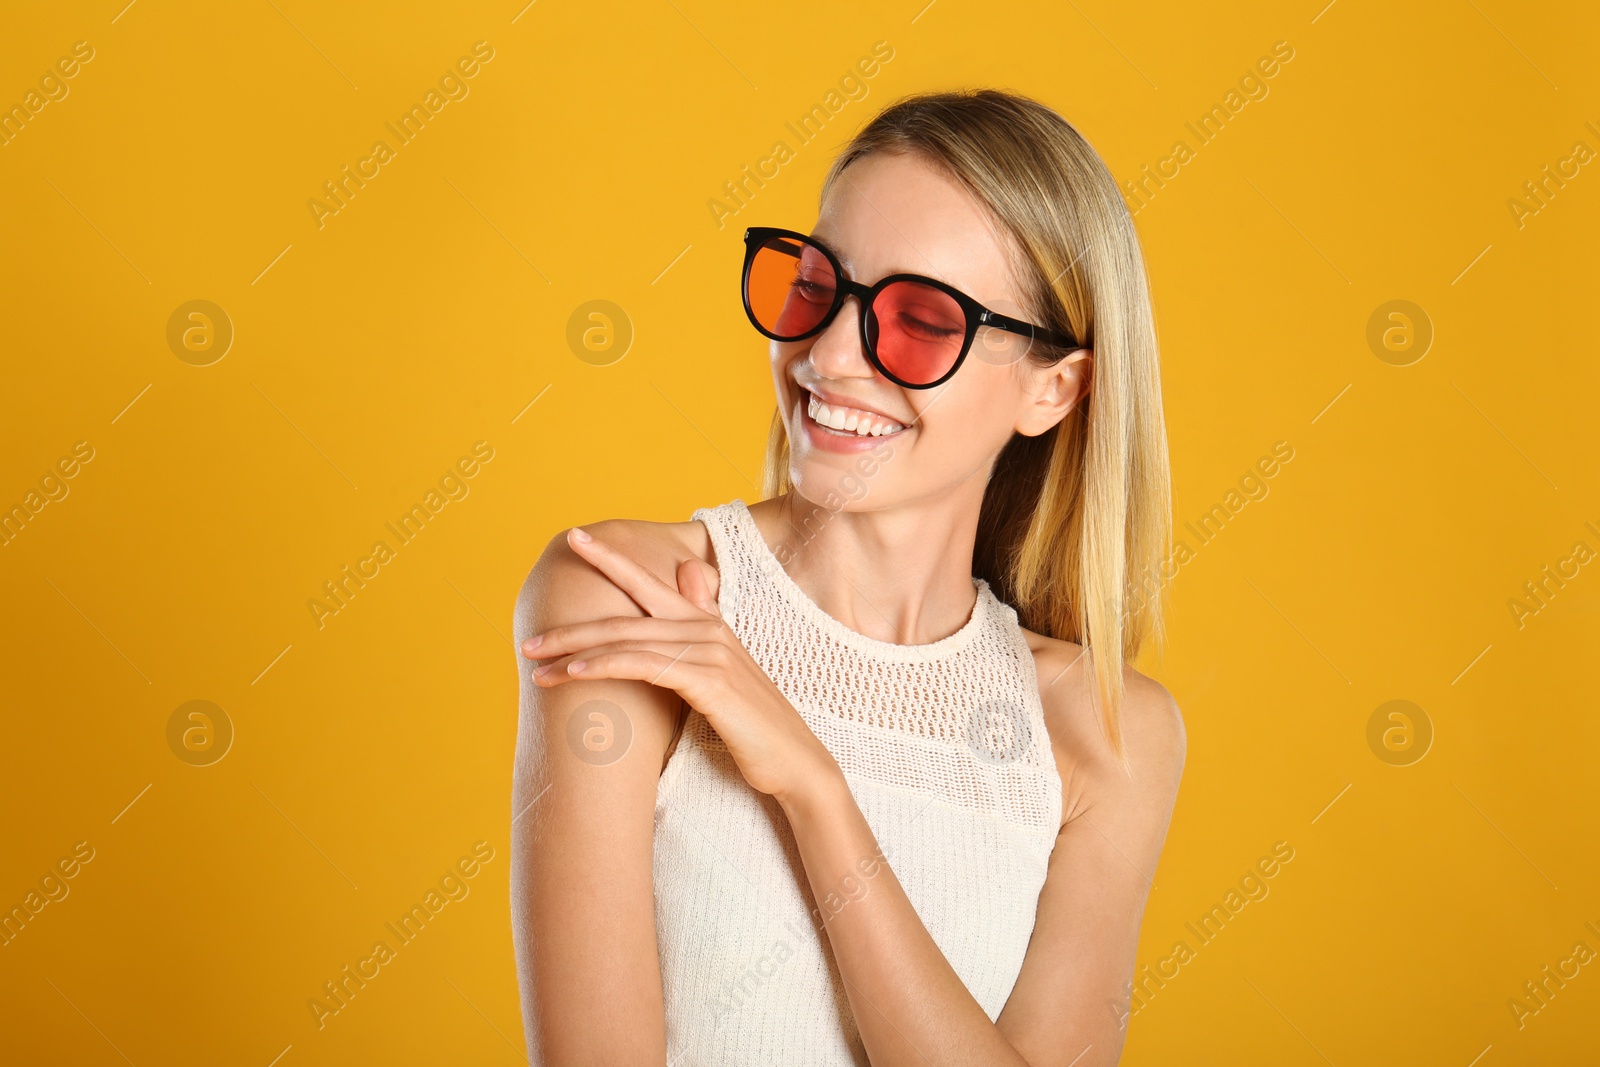 Photo of Beautiful woman in stylish sunglasses on yellow background